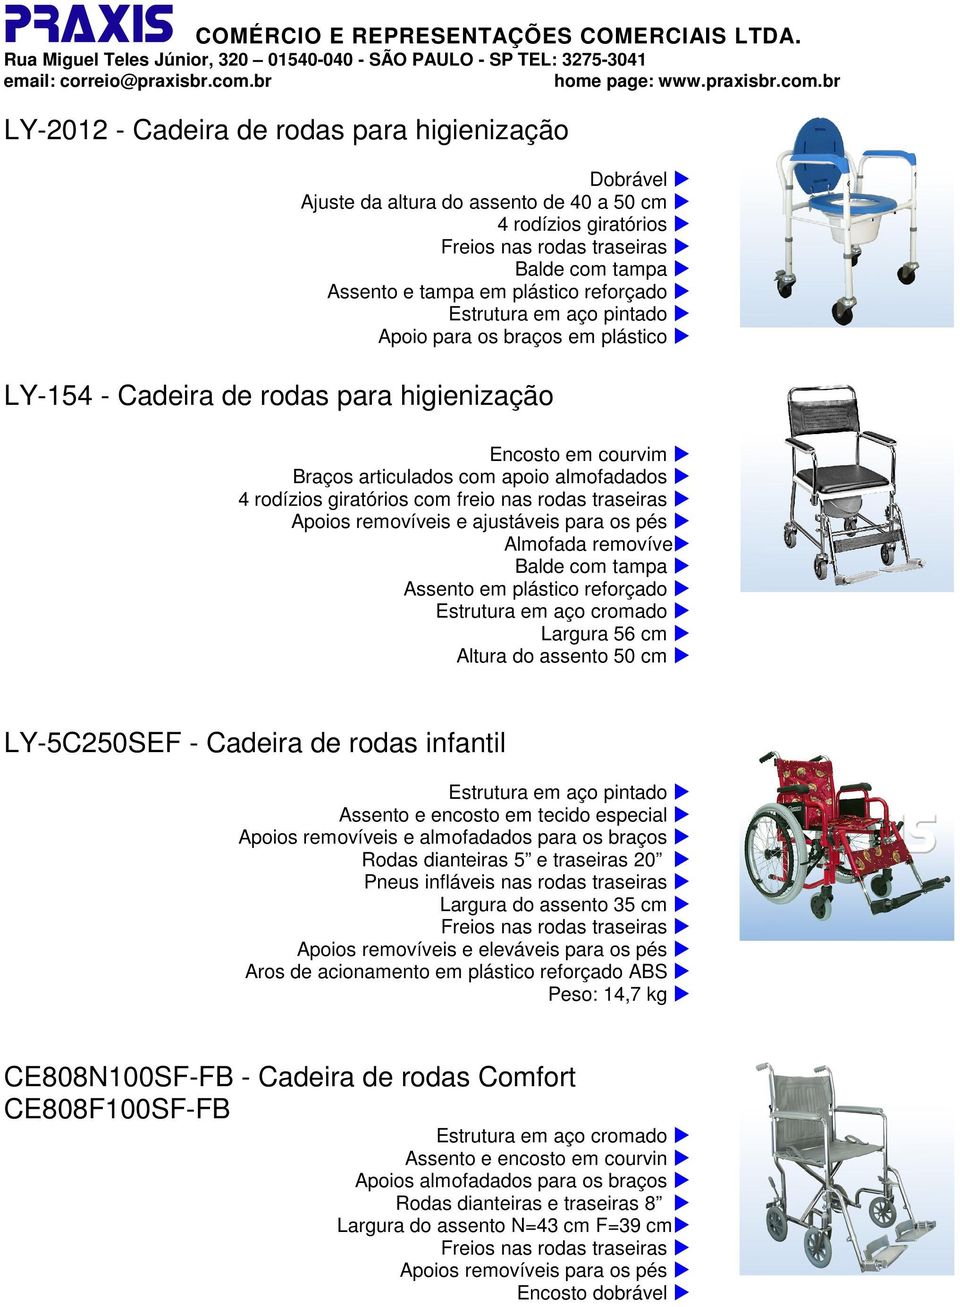 assento 50 cm LY-5C250SEF - Cadeira de rodas infantil Estrutura em aço pintado Assento e encosto em tecido especial Apoios removíveis e almofadados para os braços Rodas dianteiras 5 e traseiras 20